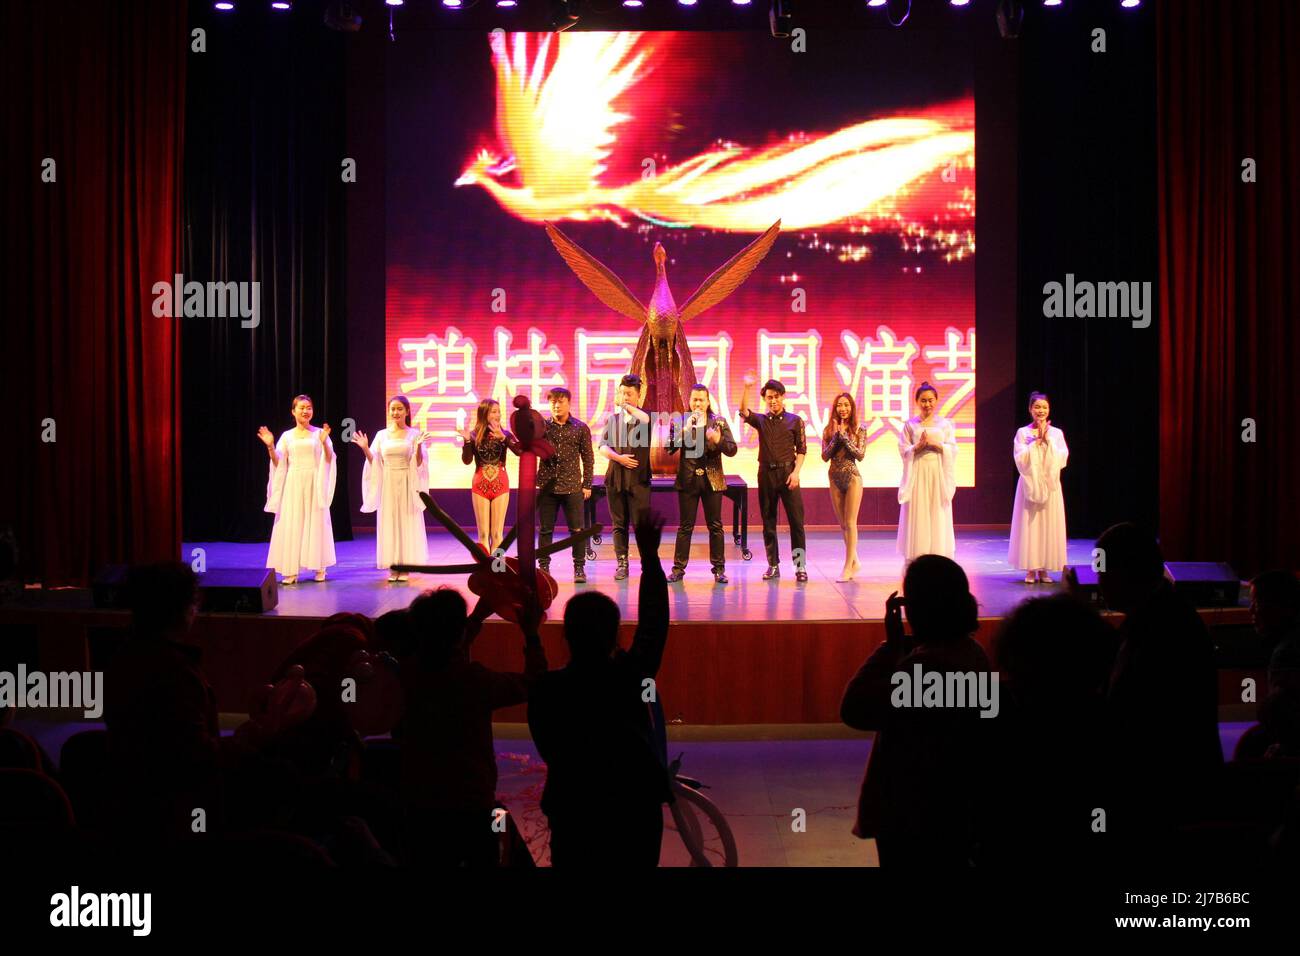 ZHANGJIAJIE, CHINE - 3 AVRIL 2019 - les touristes profitent d'un spectacle magique à l'hôtel Country Garden Phoenix à Zhangjiajie, dans la province du Hunan, En Chine centrale Banque D'Images